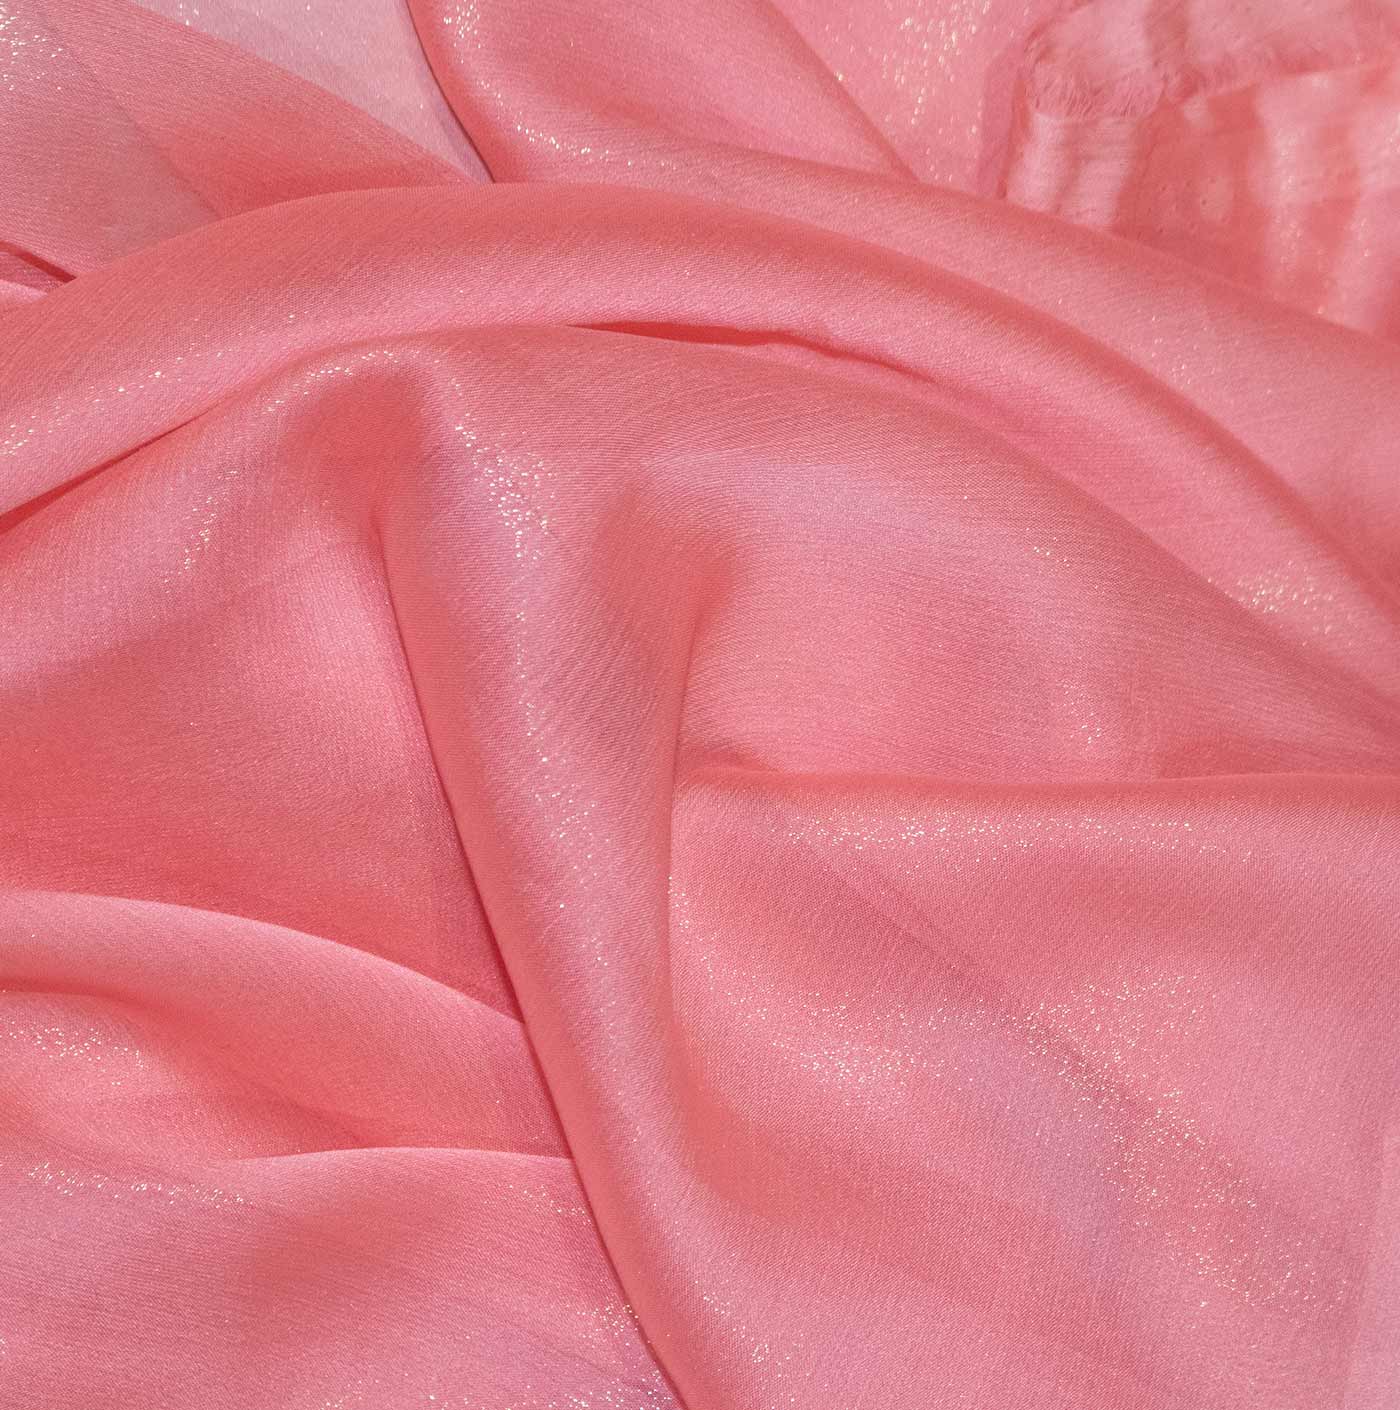 Peach Cationic Chiffon Fabric